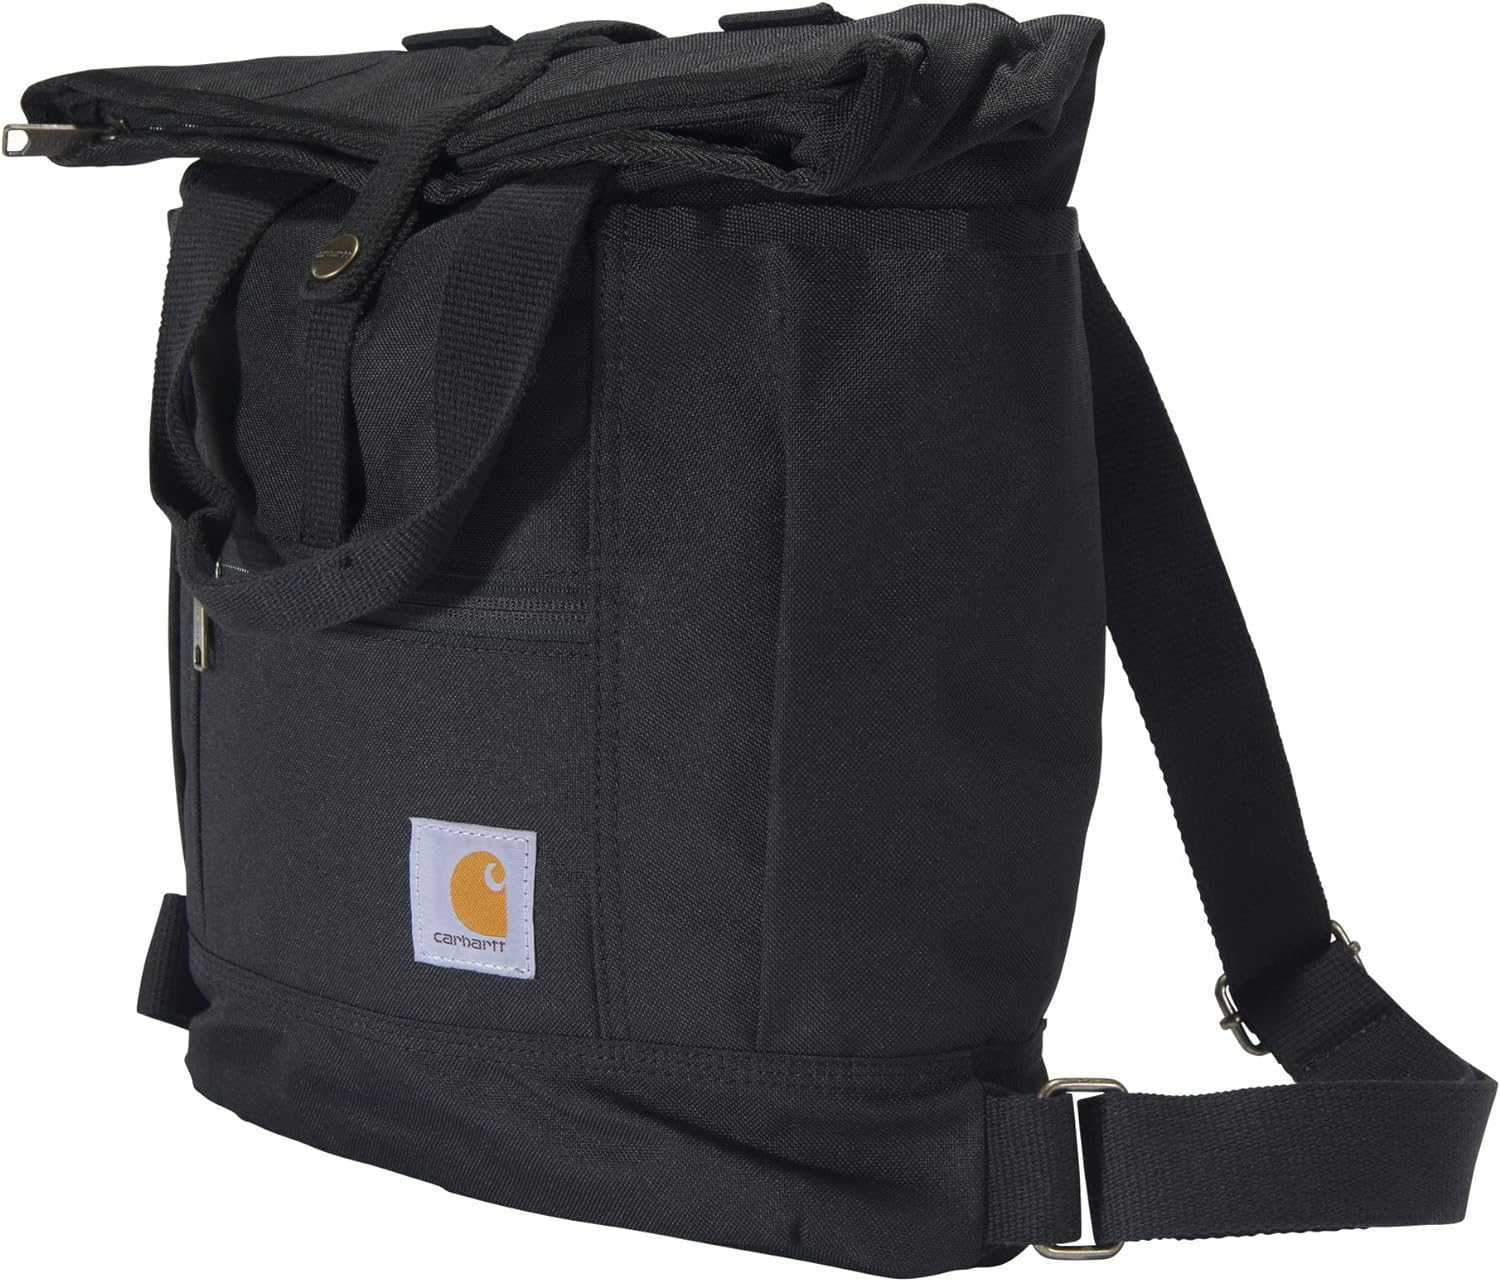 Carhartt Convertible Backpack Tote Bag